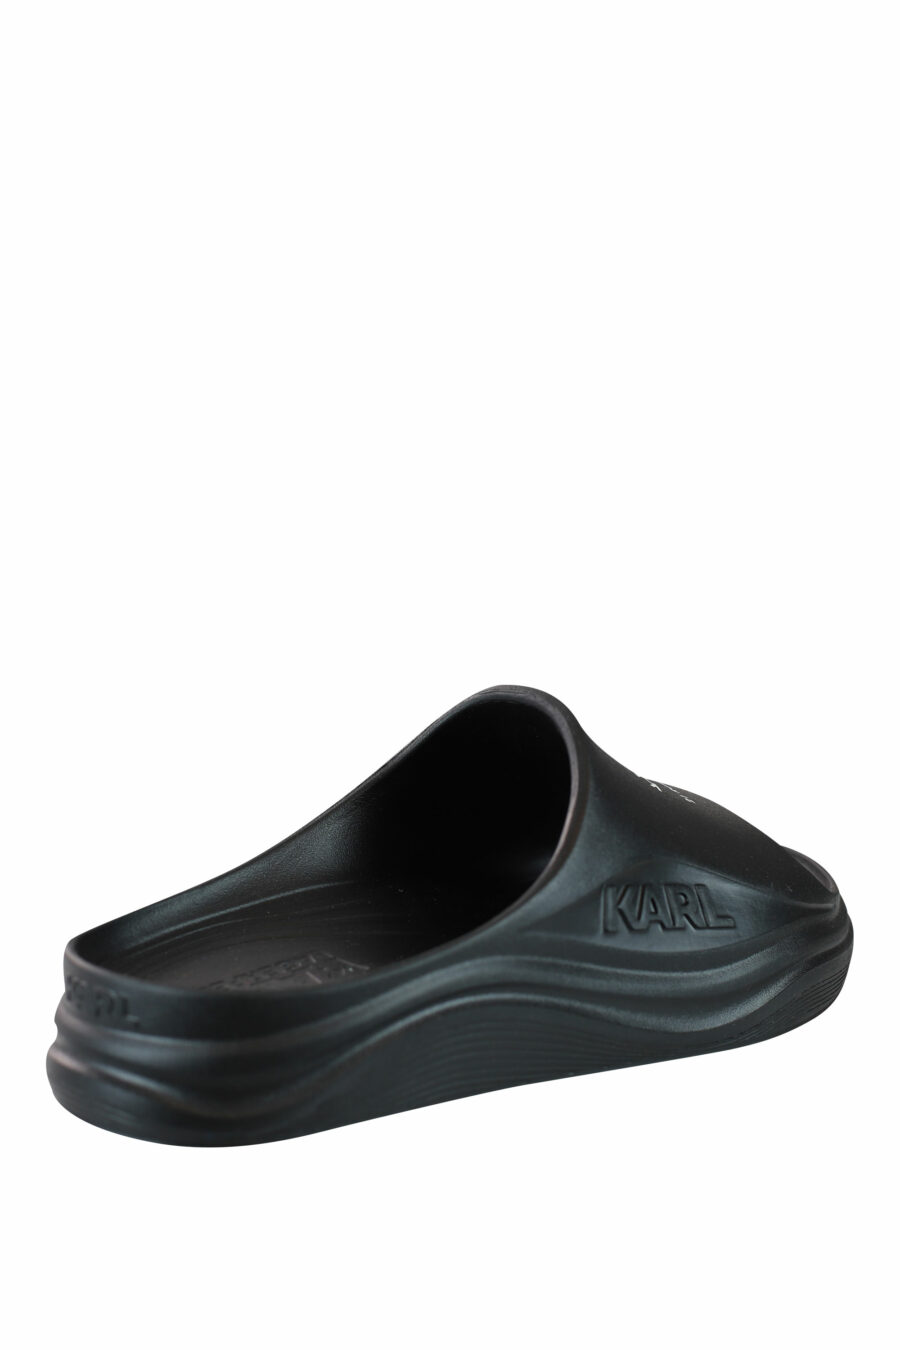 Schwarze Öko-Flip-Flops mit weißem "rue st guillaume"-Logo - IMG 0051